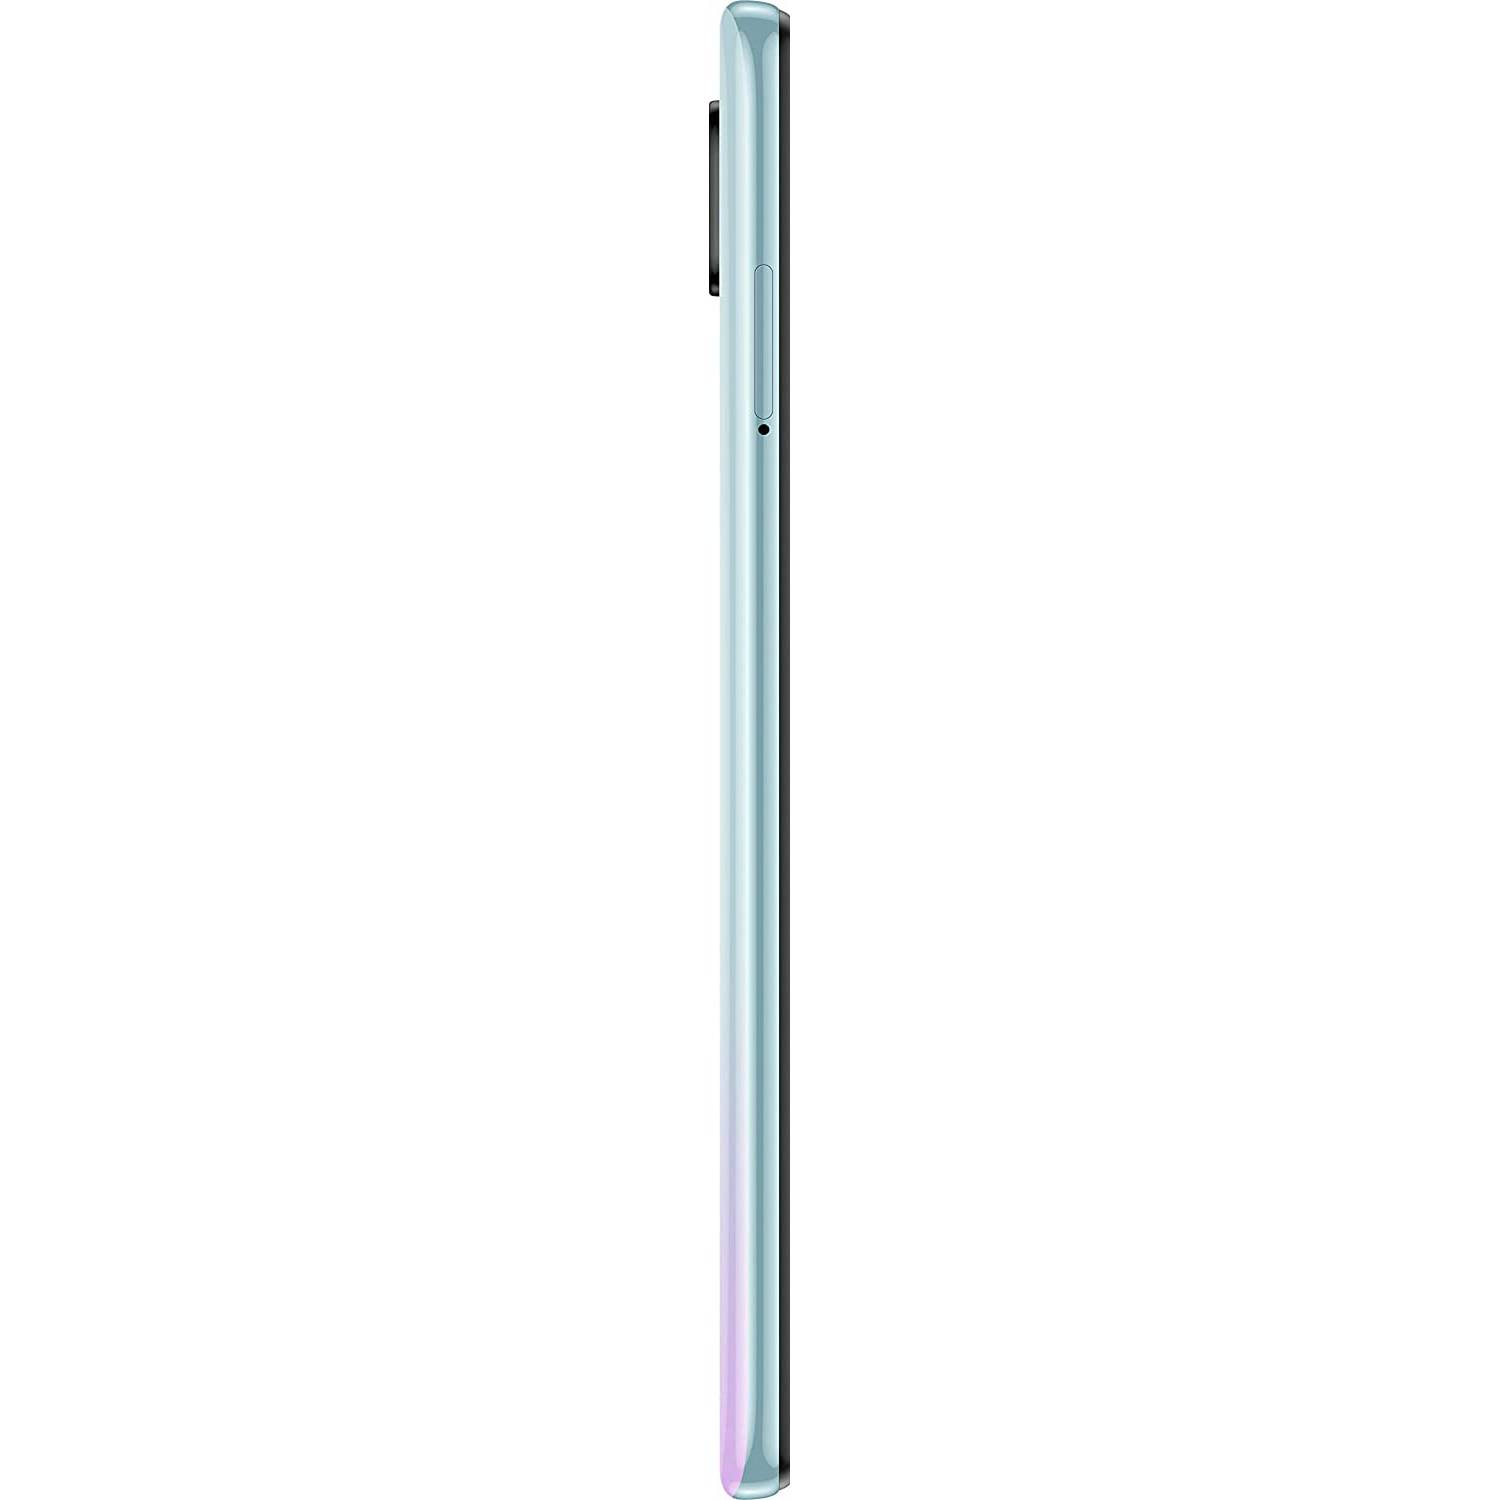 Xiaomi Redmi Note 9 6,53'' 64GB Verde - Smartphone